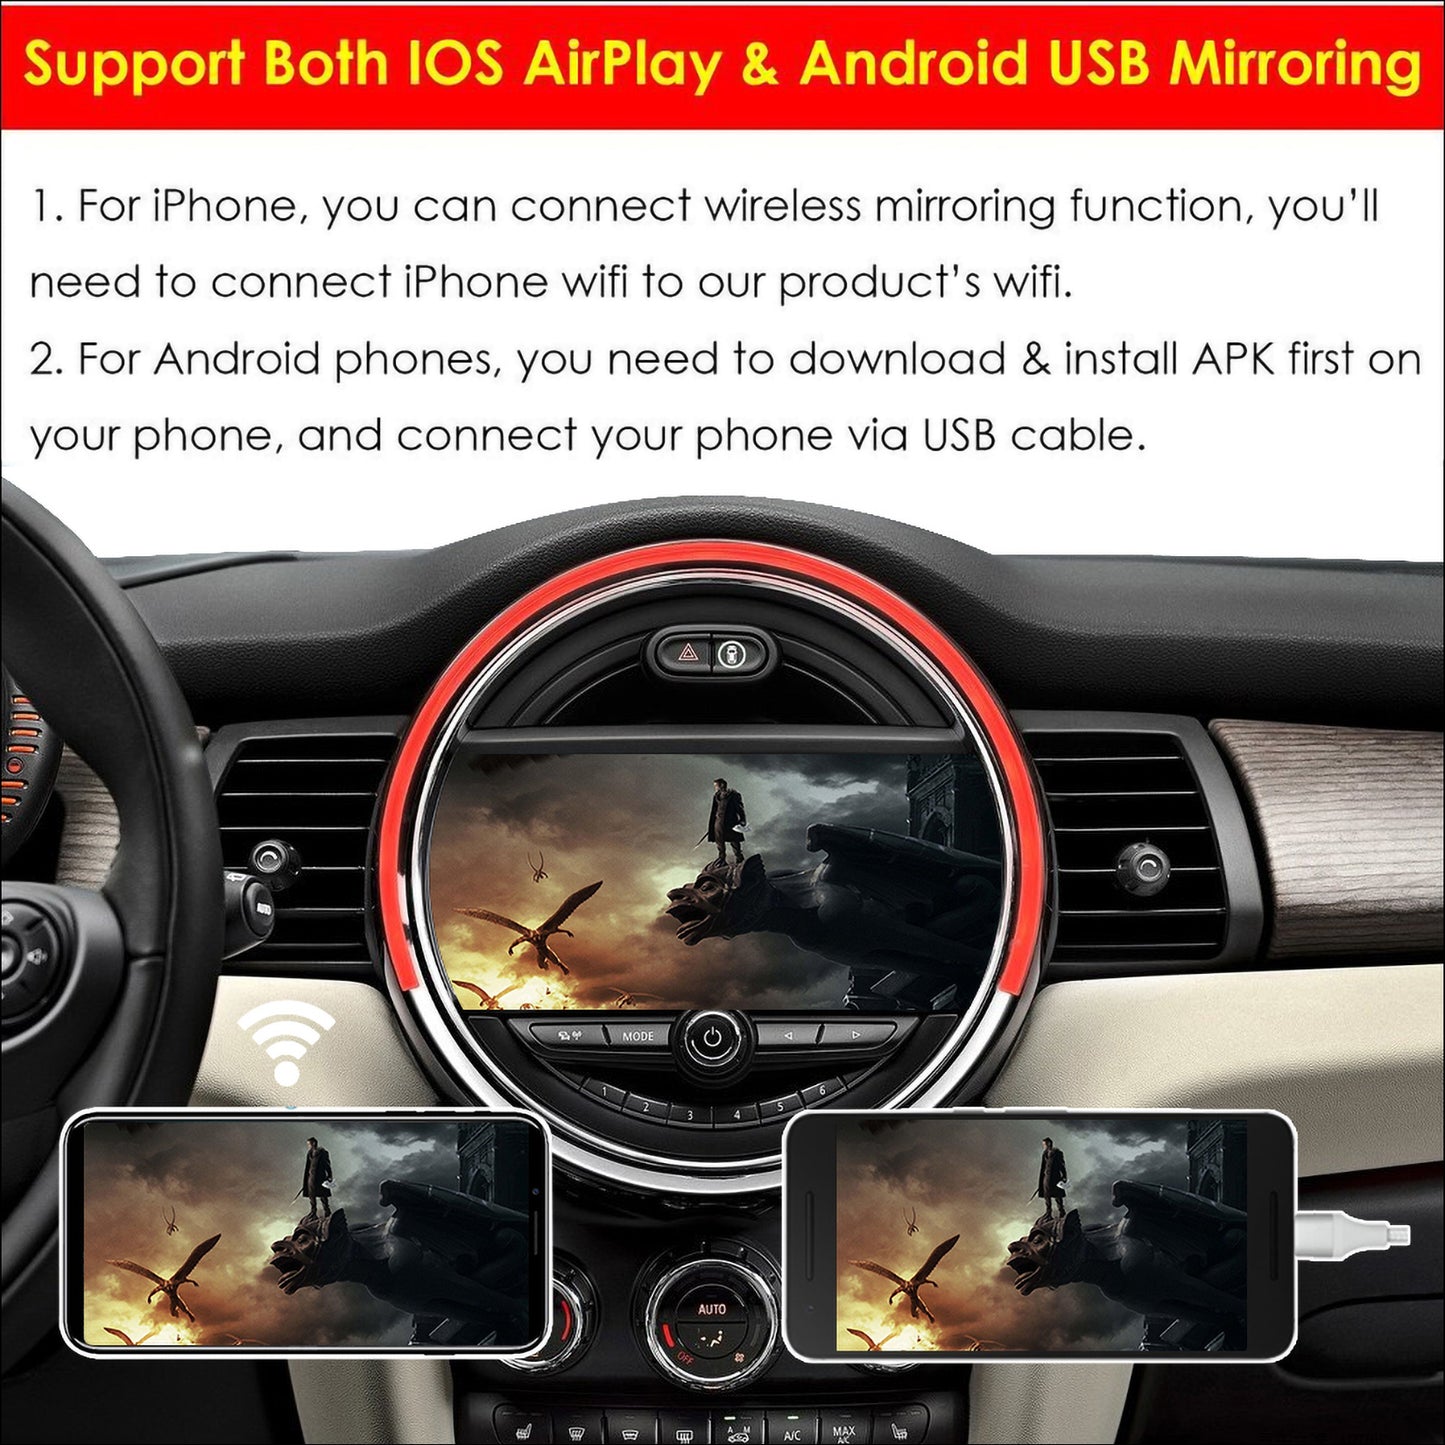 CarProKit Wireless CarPlay Android Auto AirPlay USB Mirroring Nachrüstsatz für Mini Cooper F54 F55 F56 F57 R58 R59 R60 R61 mit NBT-System 2014–2018 